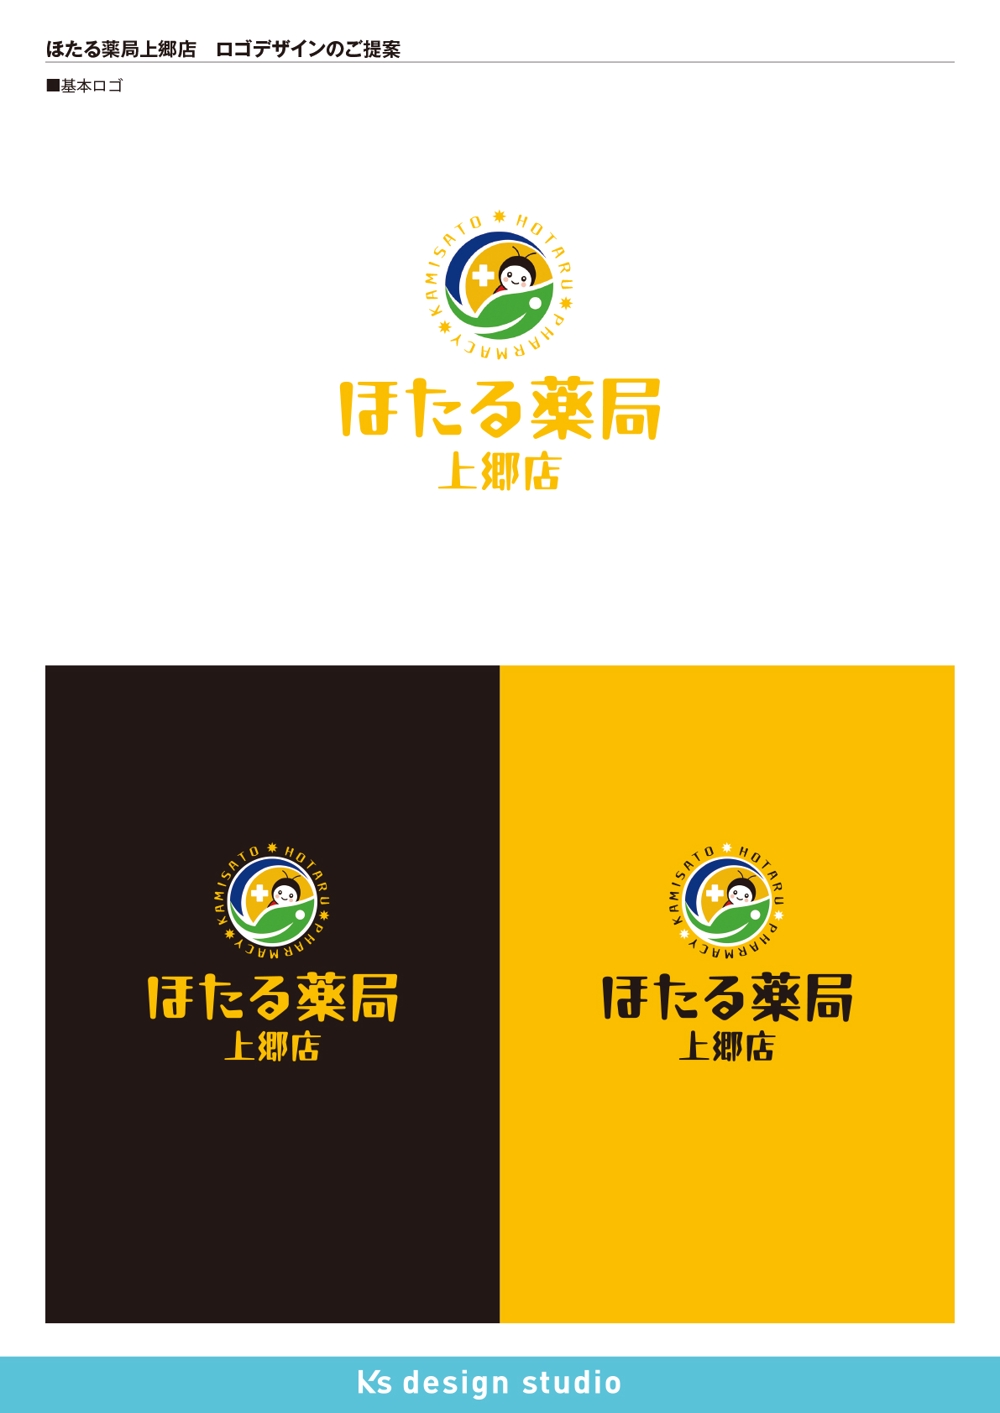 ほたる薬局上郷店_logo4-1.jpg